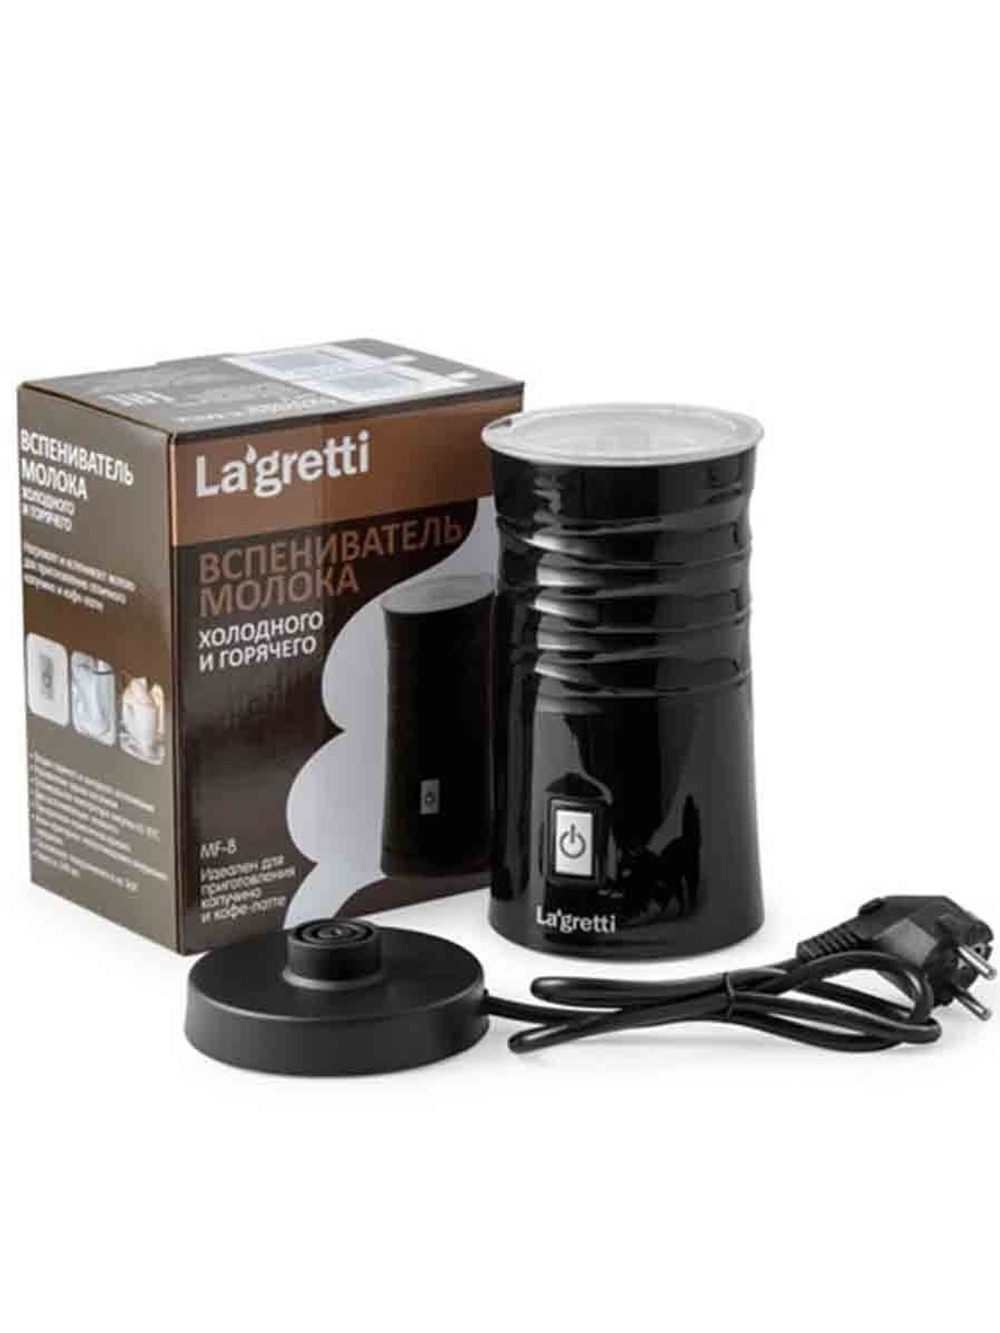 Вспениватель молока (Капучинатор) LaGretti MF-8 черный